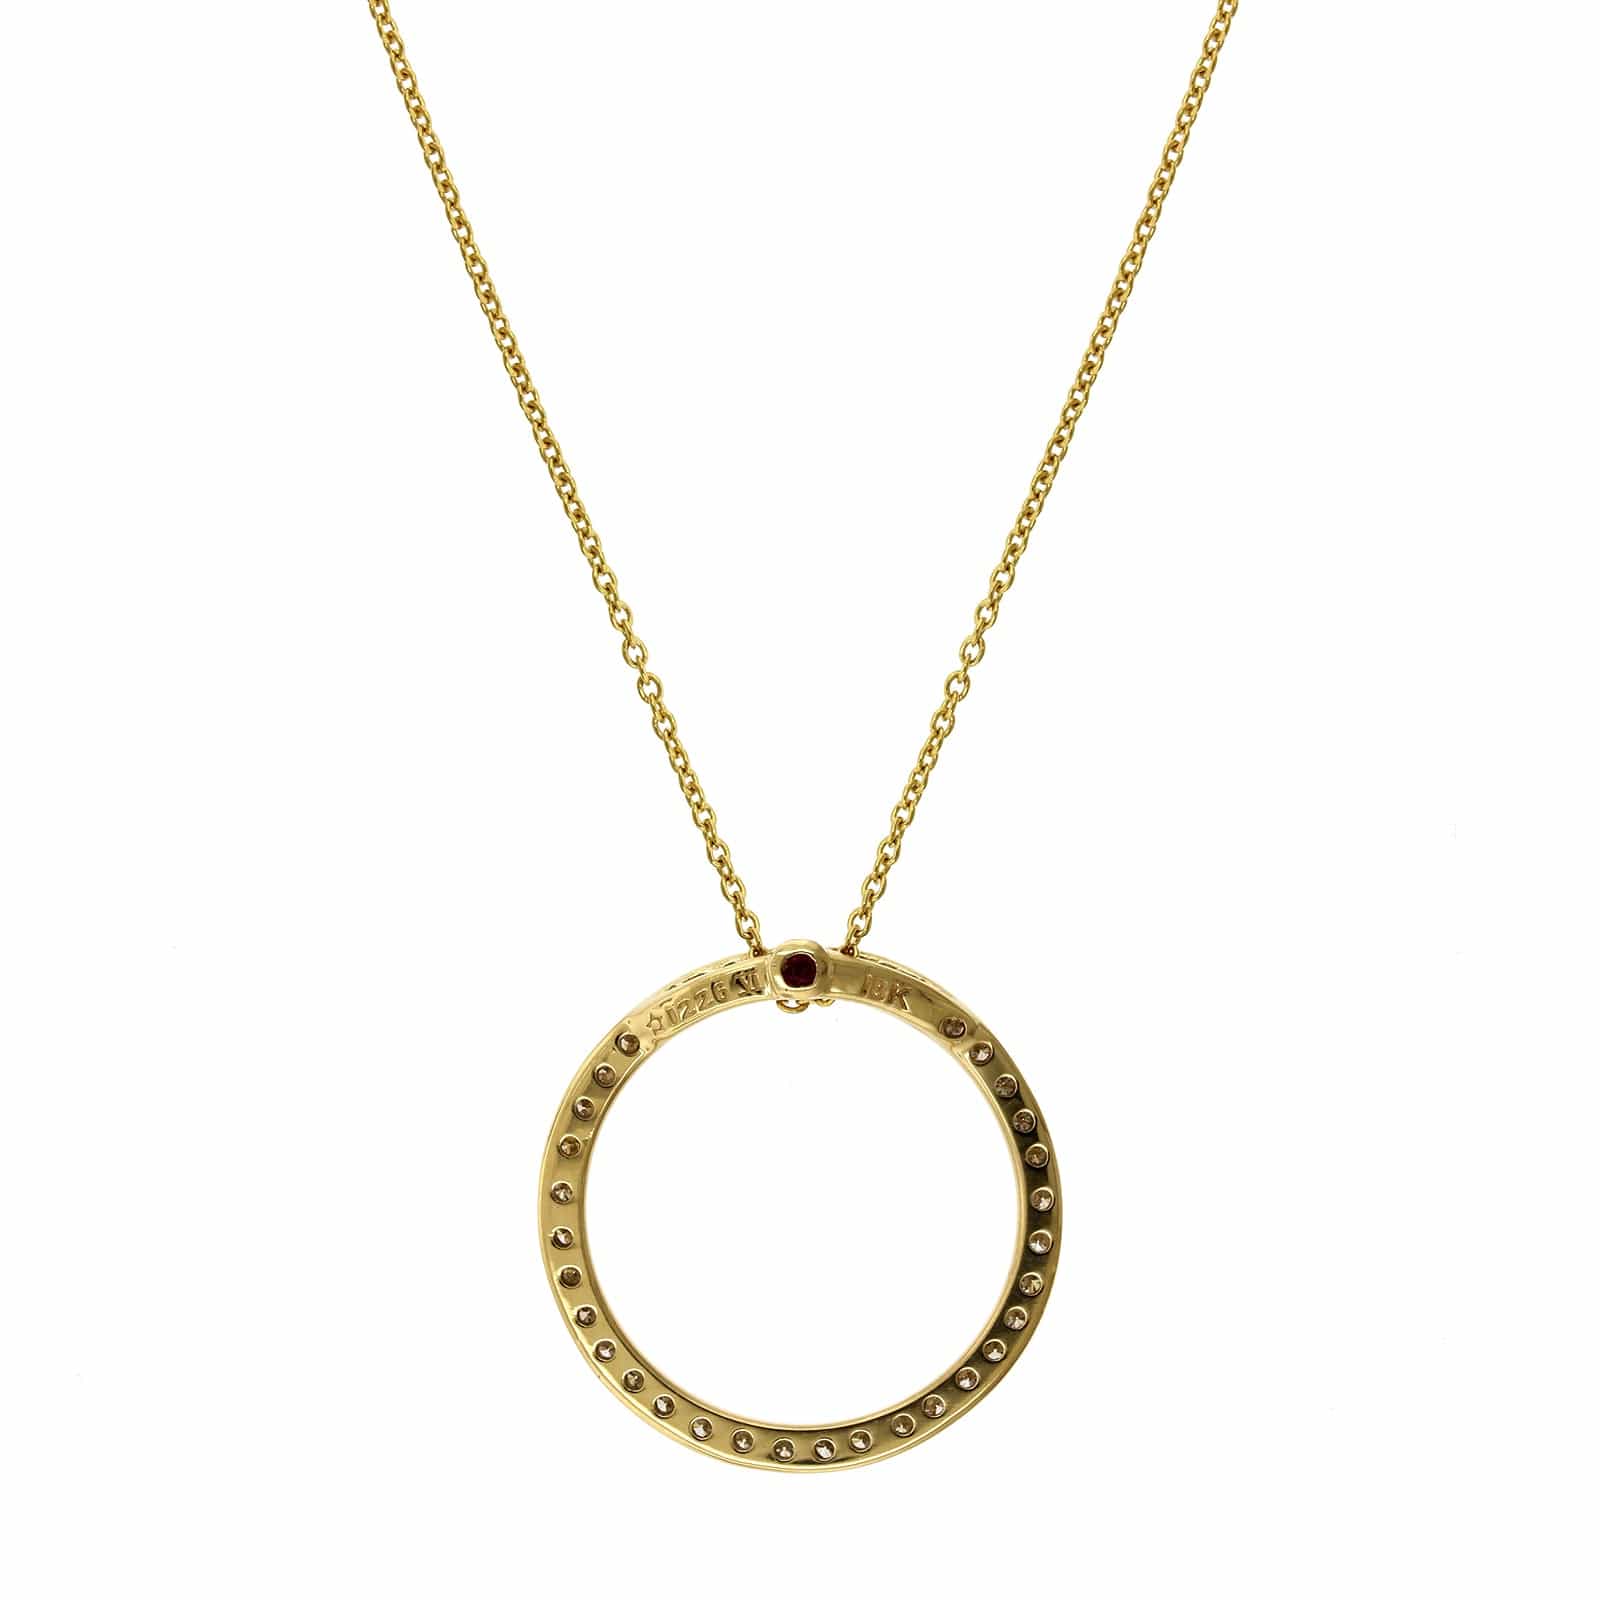 Roberto Coin 18K Yellow Gold Diamond Circle Necklace